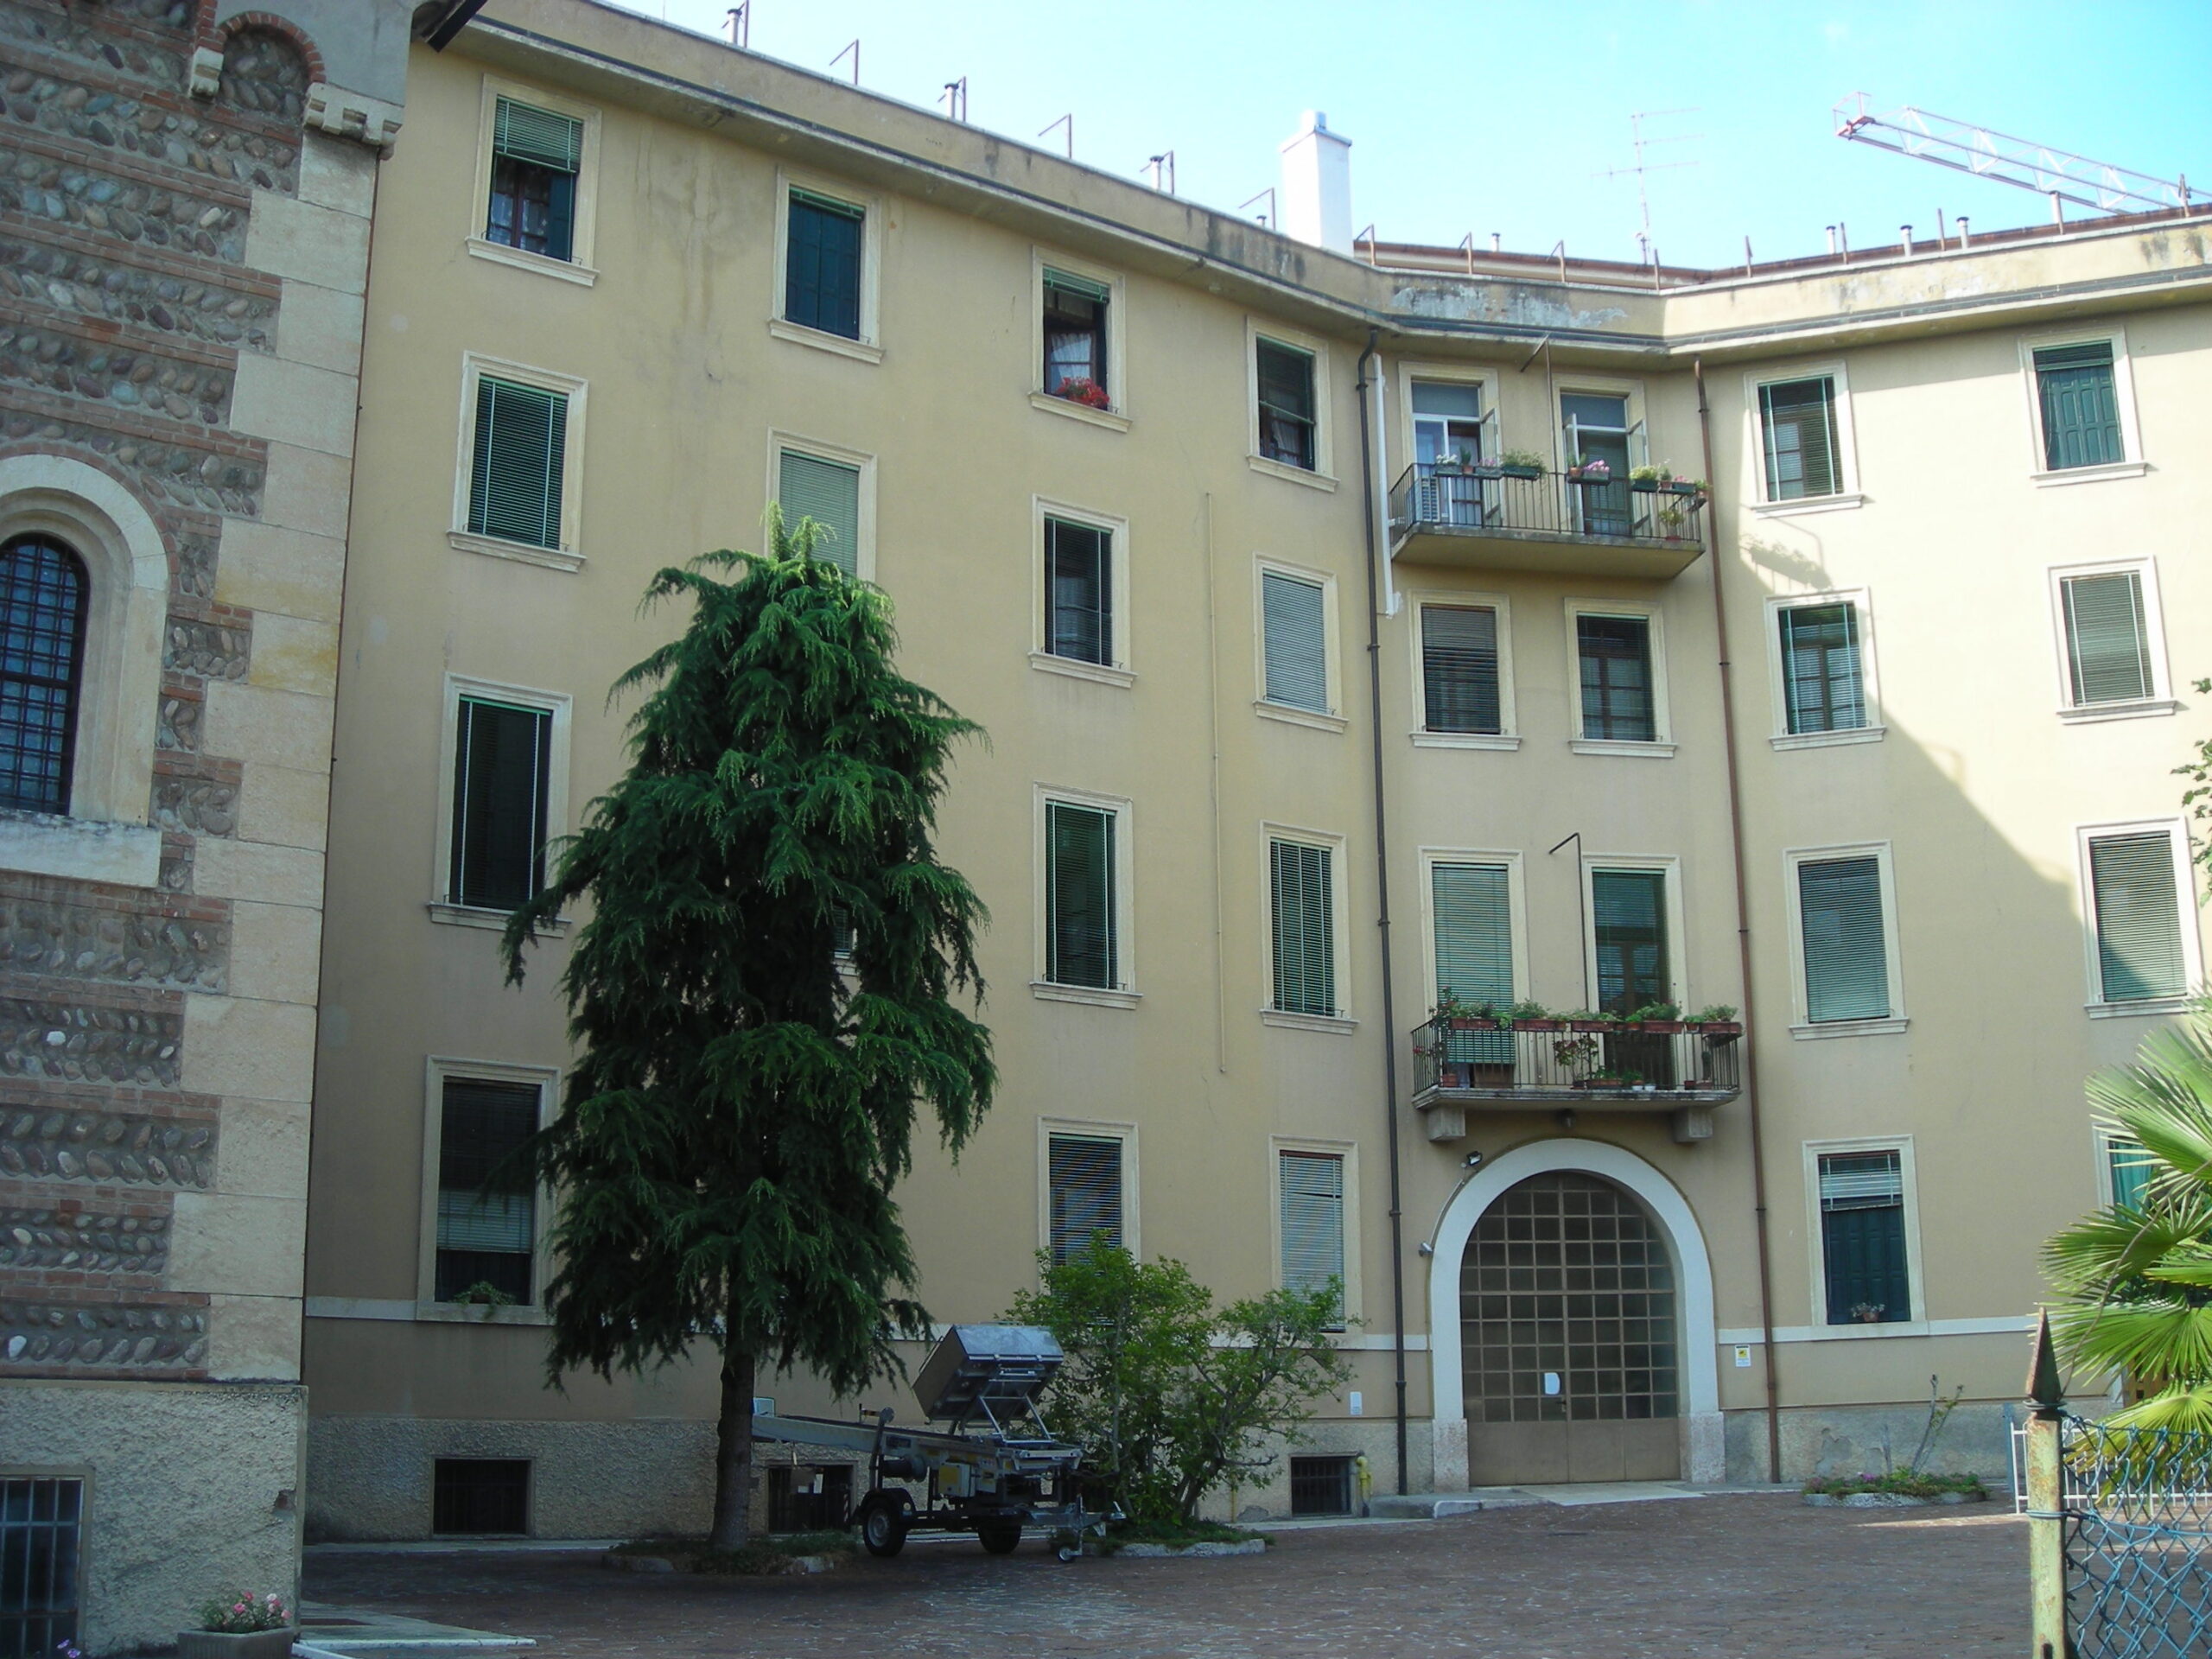 Palazzo Allegri-Ferruzzi diventa una nuova residenza per le Orsoline